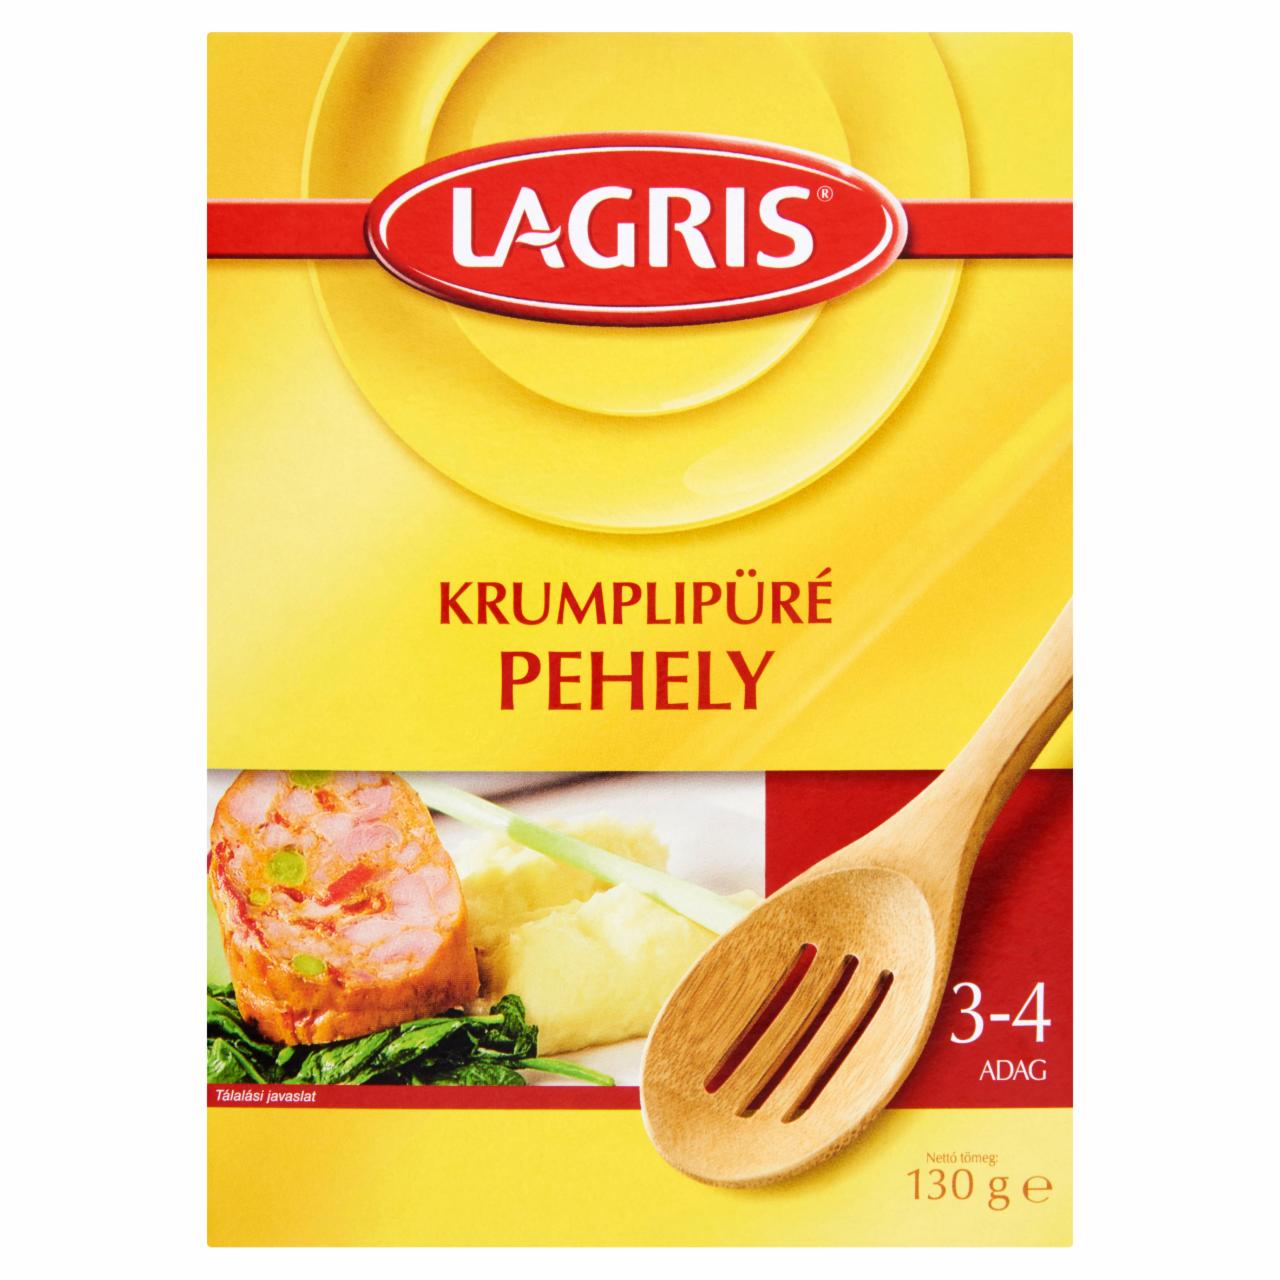 Képek - Lagris krumplipüré pehely 130 g